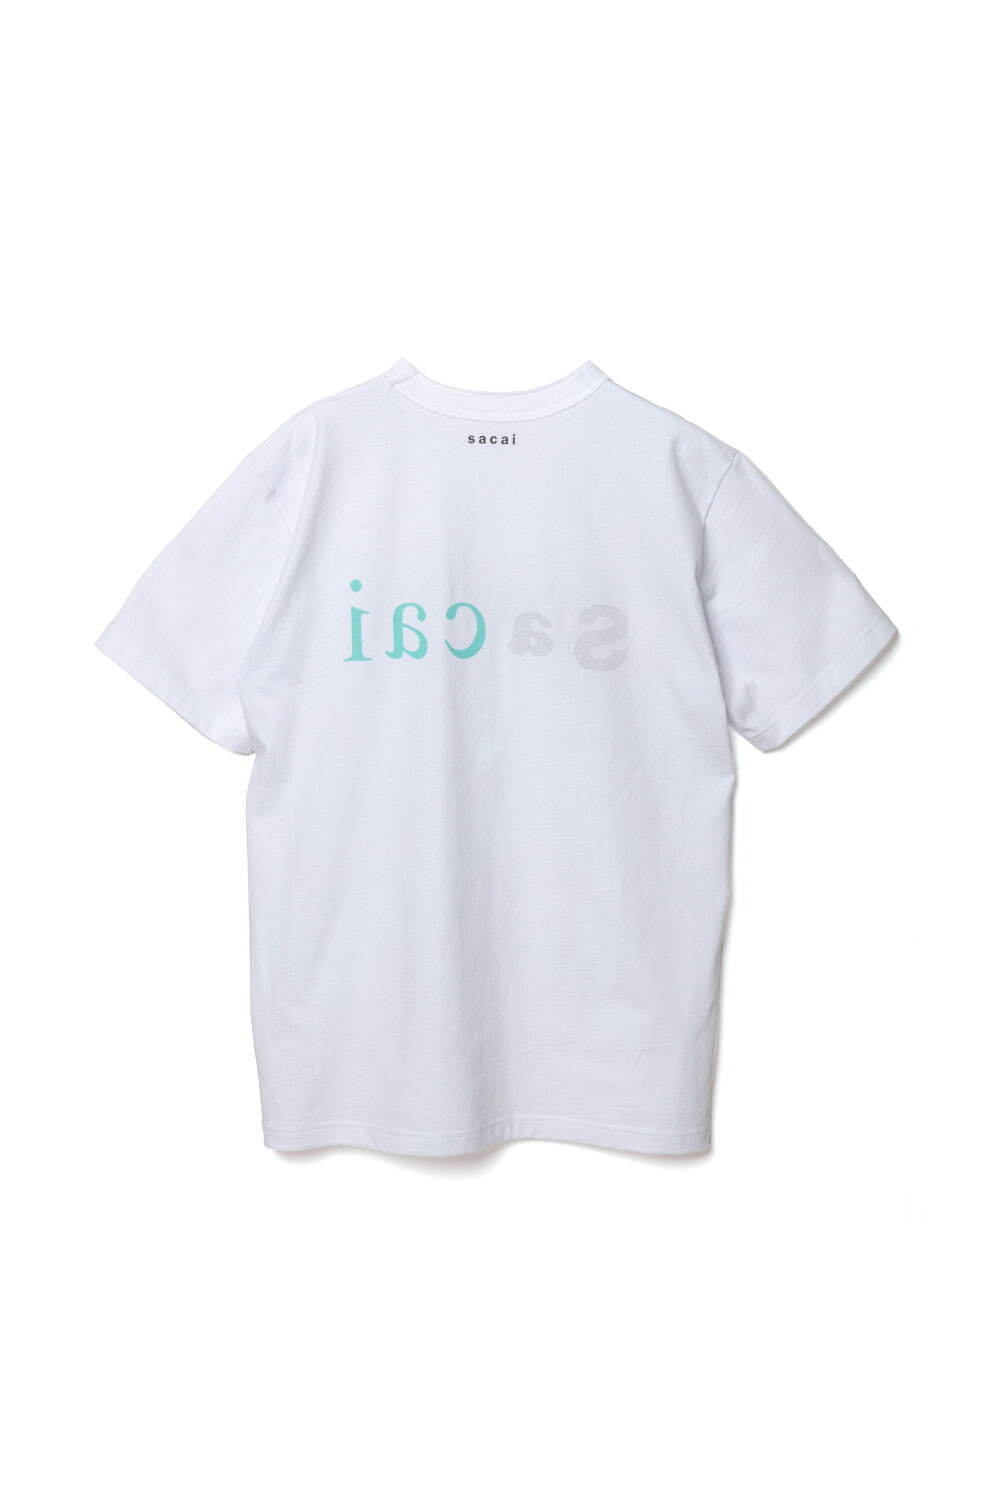 sacai“ロゴ入り”Tシャツ＆ソックス、“バンダナ柄×ナイロン素材”の 